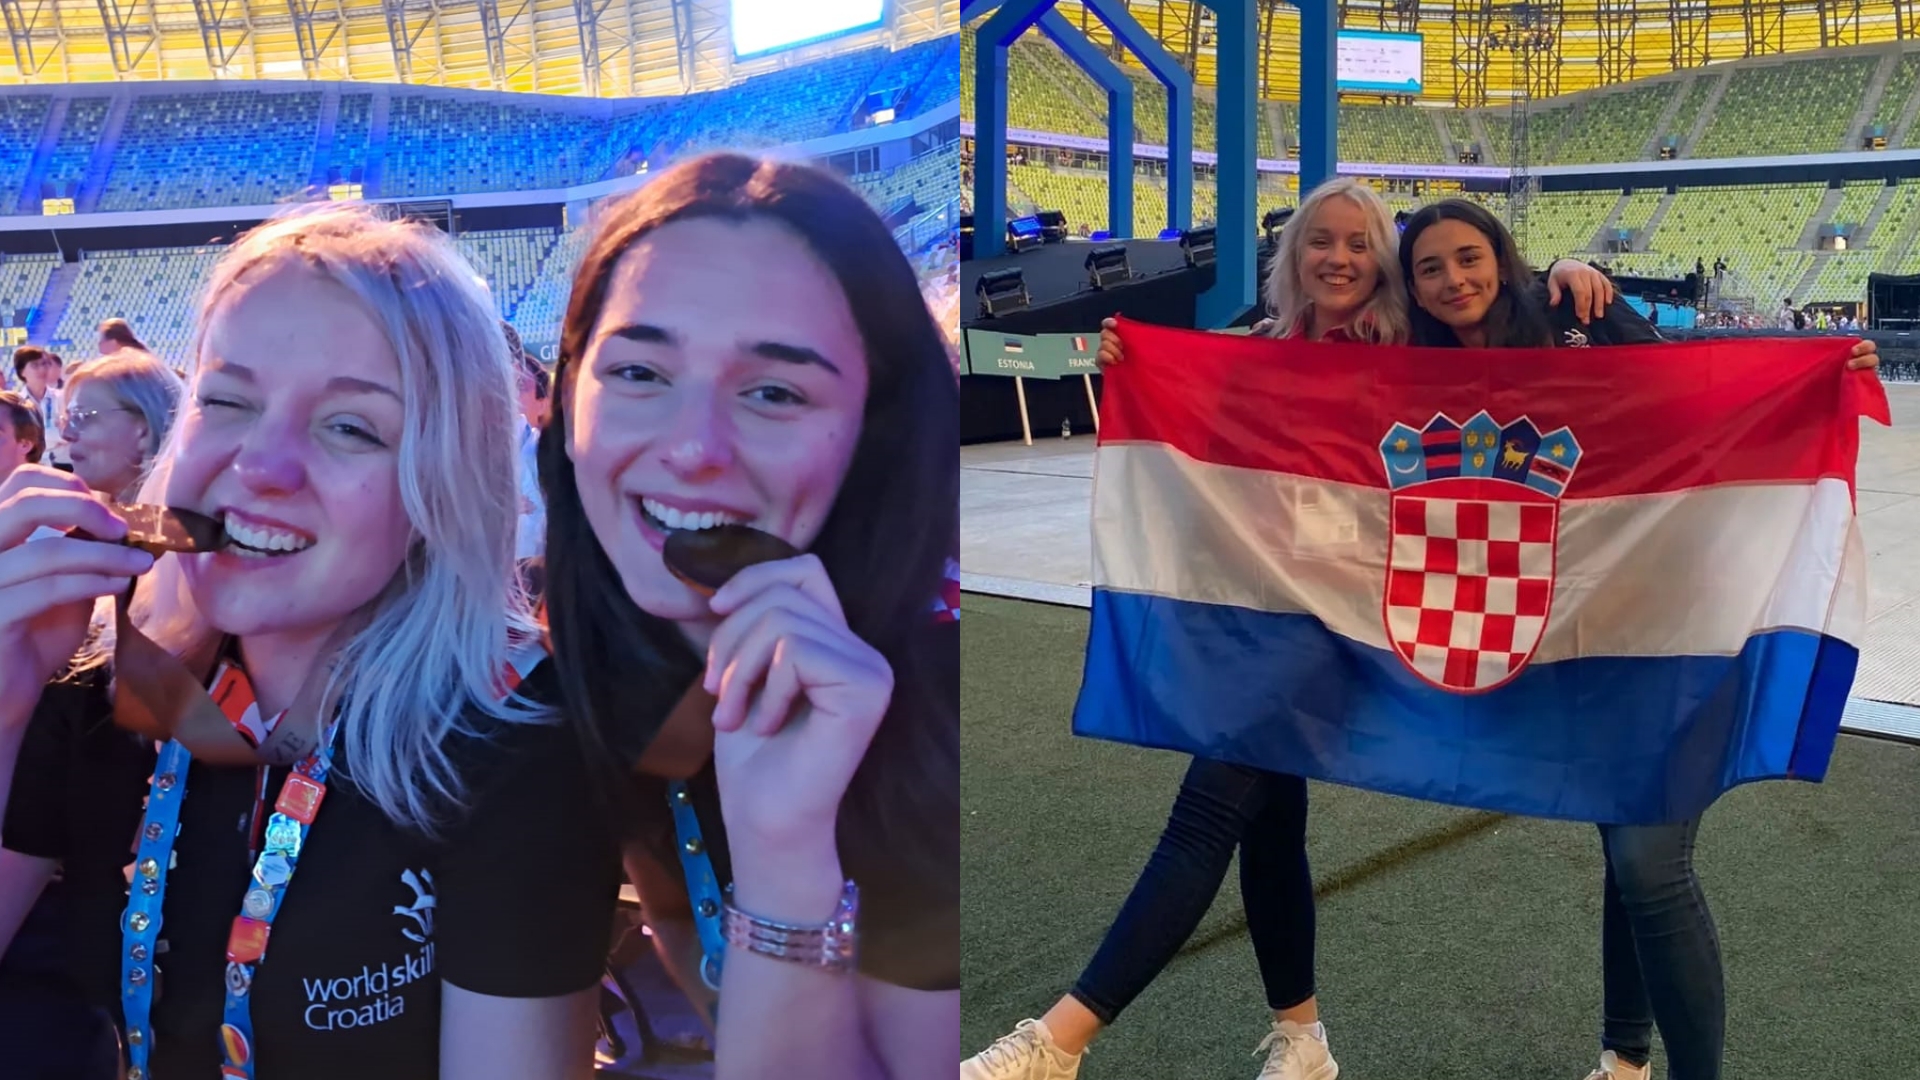 prva fotka njih dvije kako grizu medalje, druga fotka njih sa hrvatskom zastavom